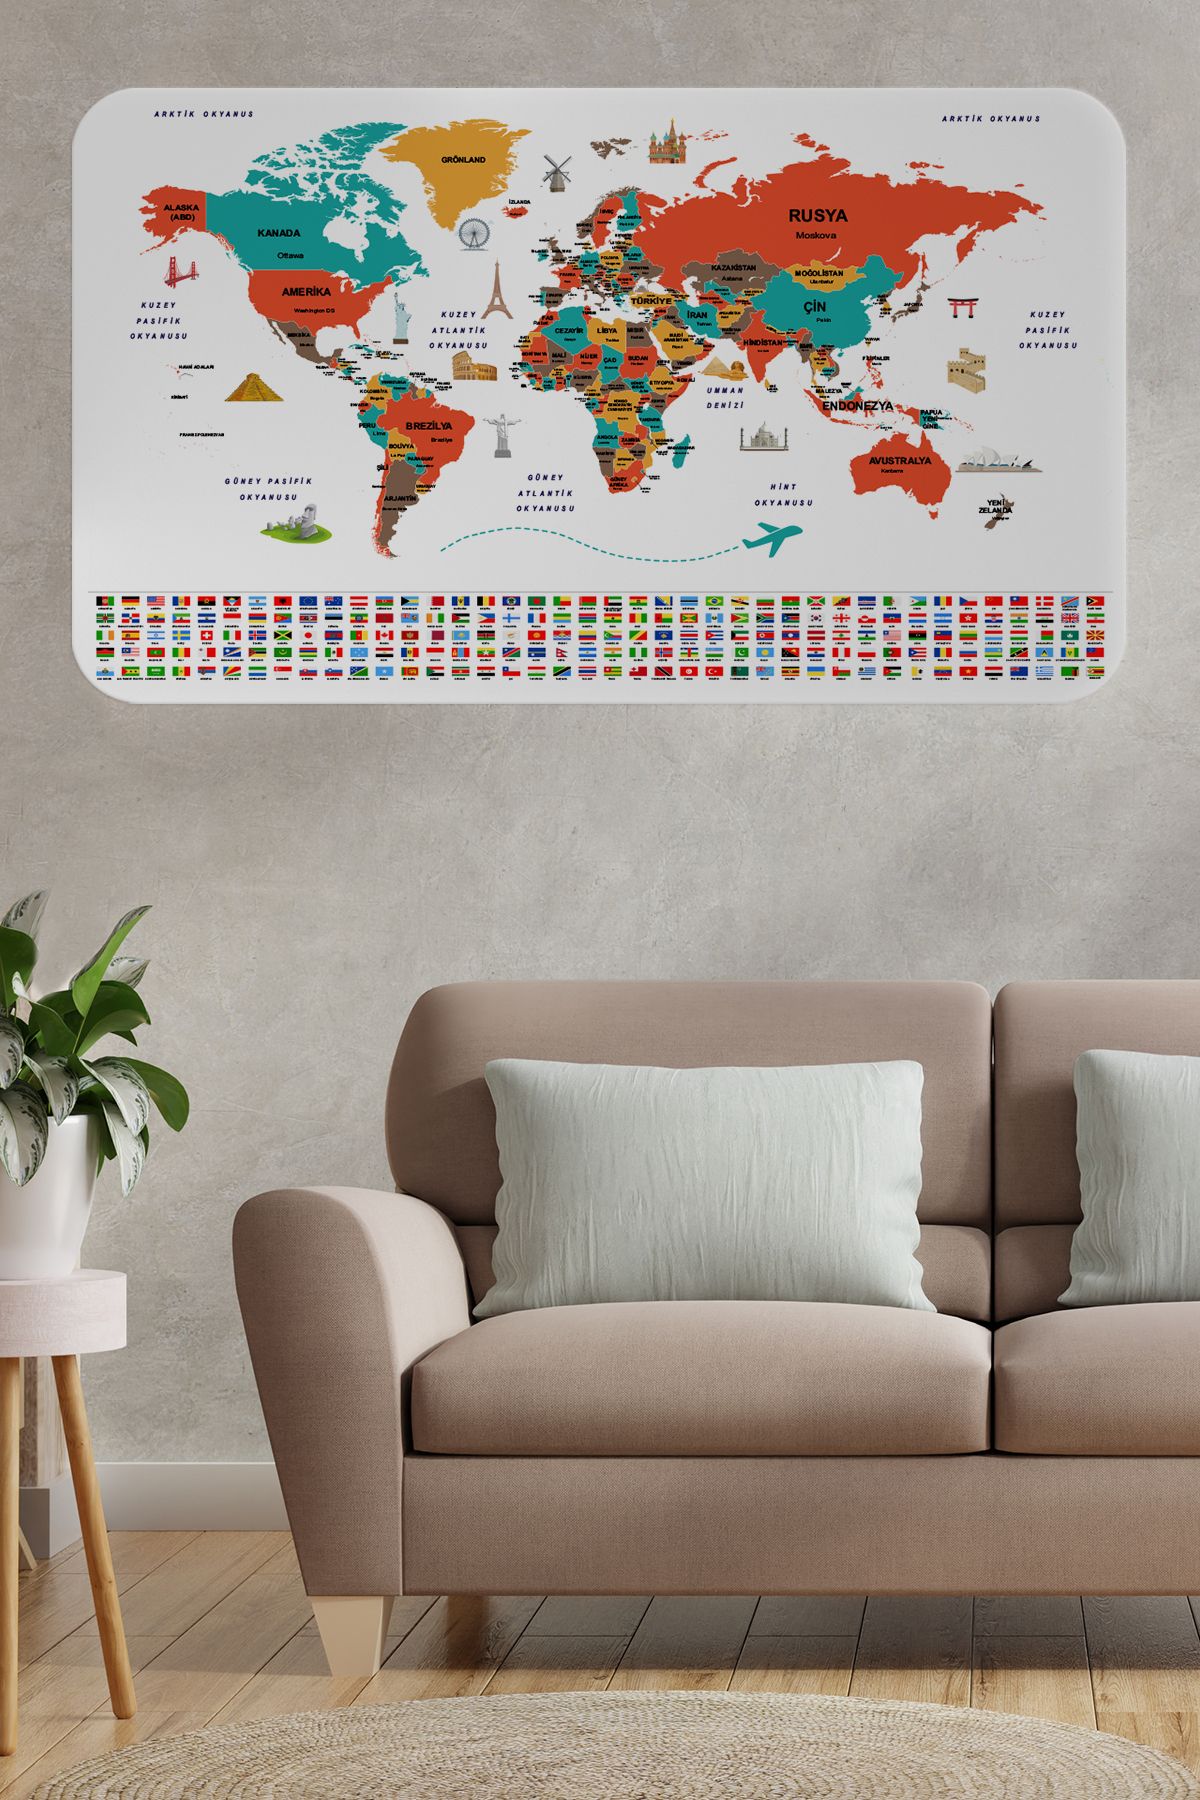 Harita Sepeti Türkçe Ülke Bayraklı Eğitici Başkent Detaylı Atlası Dünya Haritası Duvar Sticker-3858